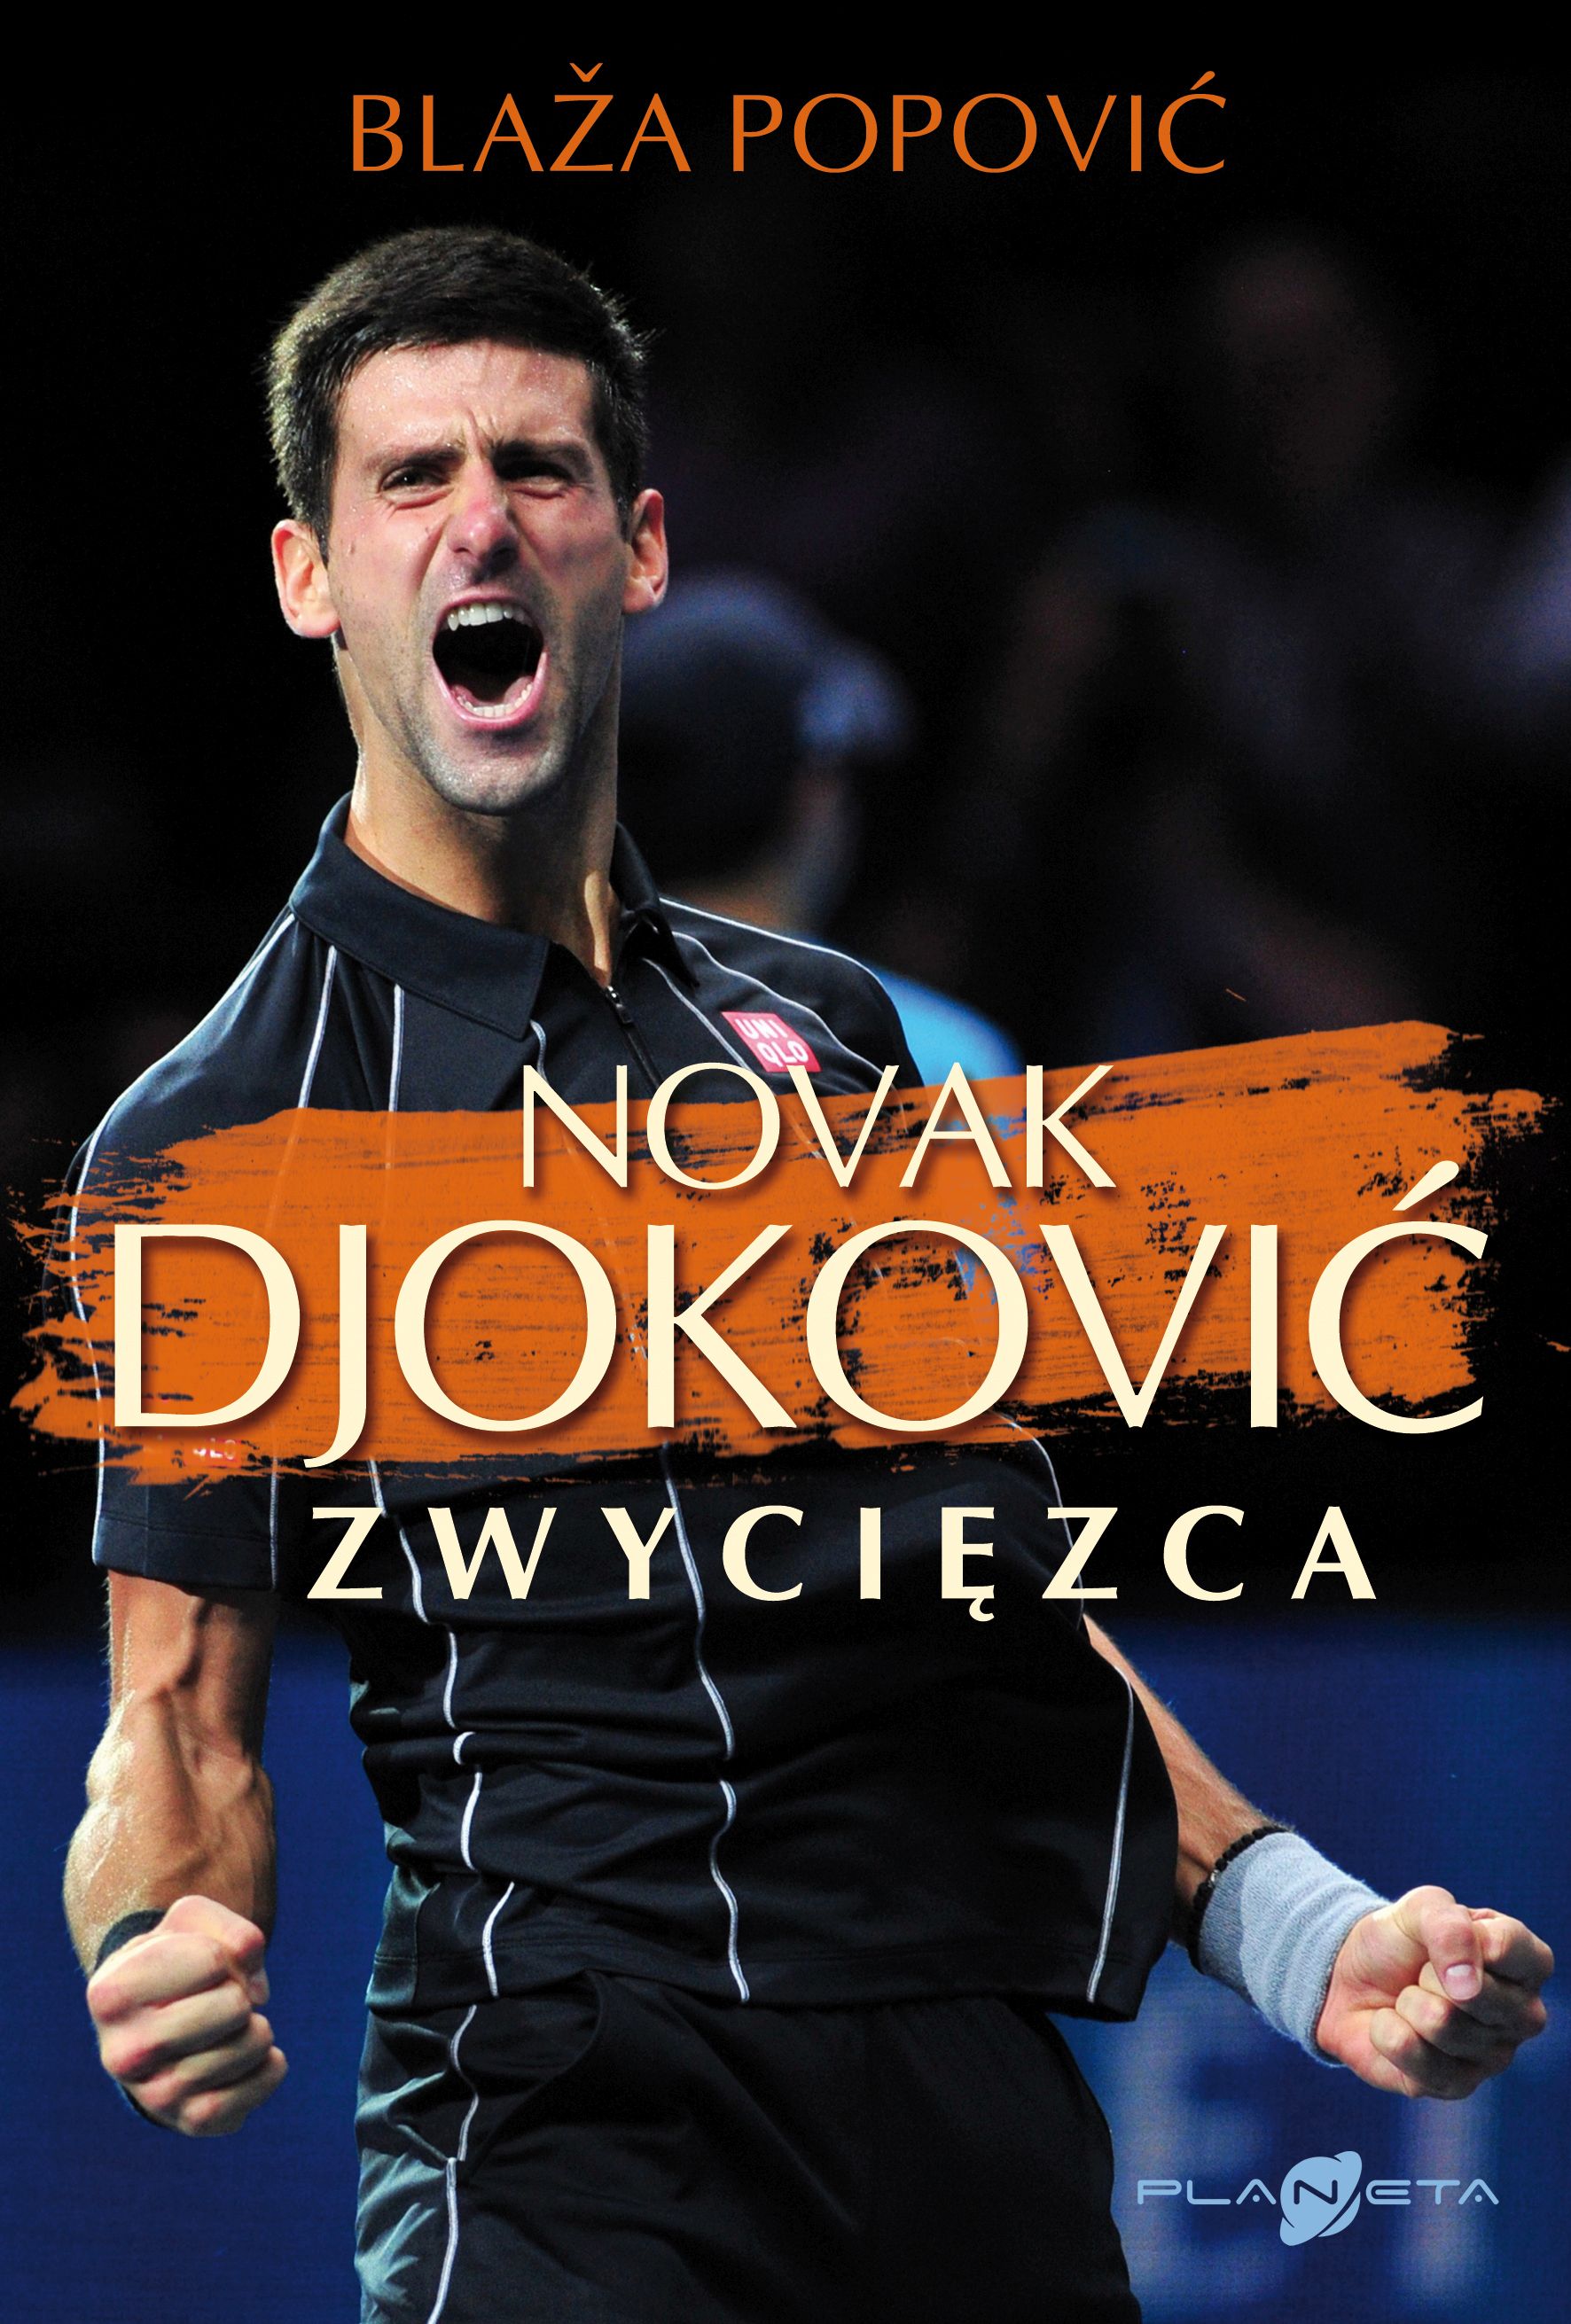  "Zwycięzca",, Novak Djokovic